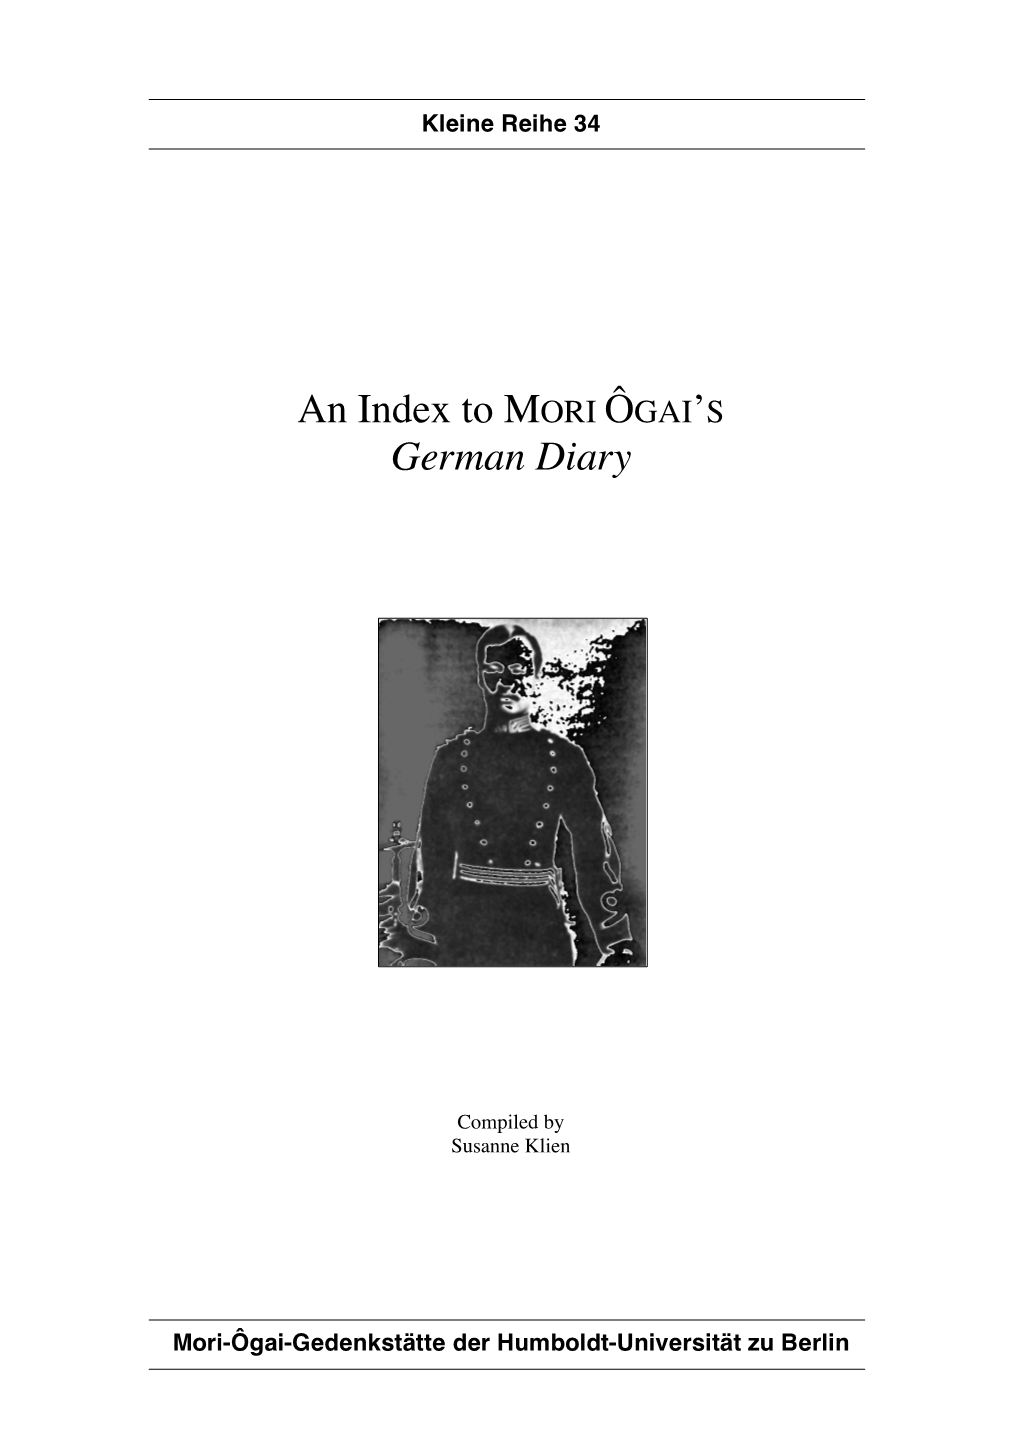 An Index to Mori Ôgai's